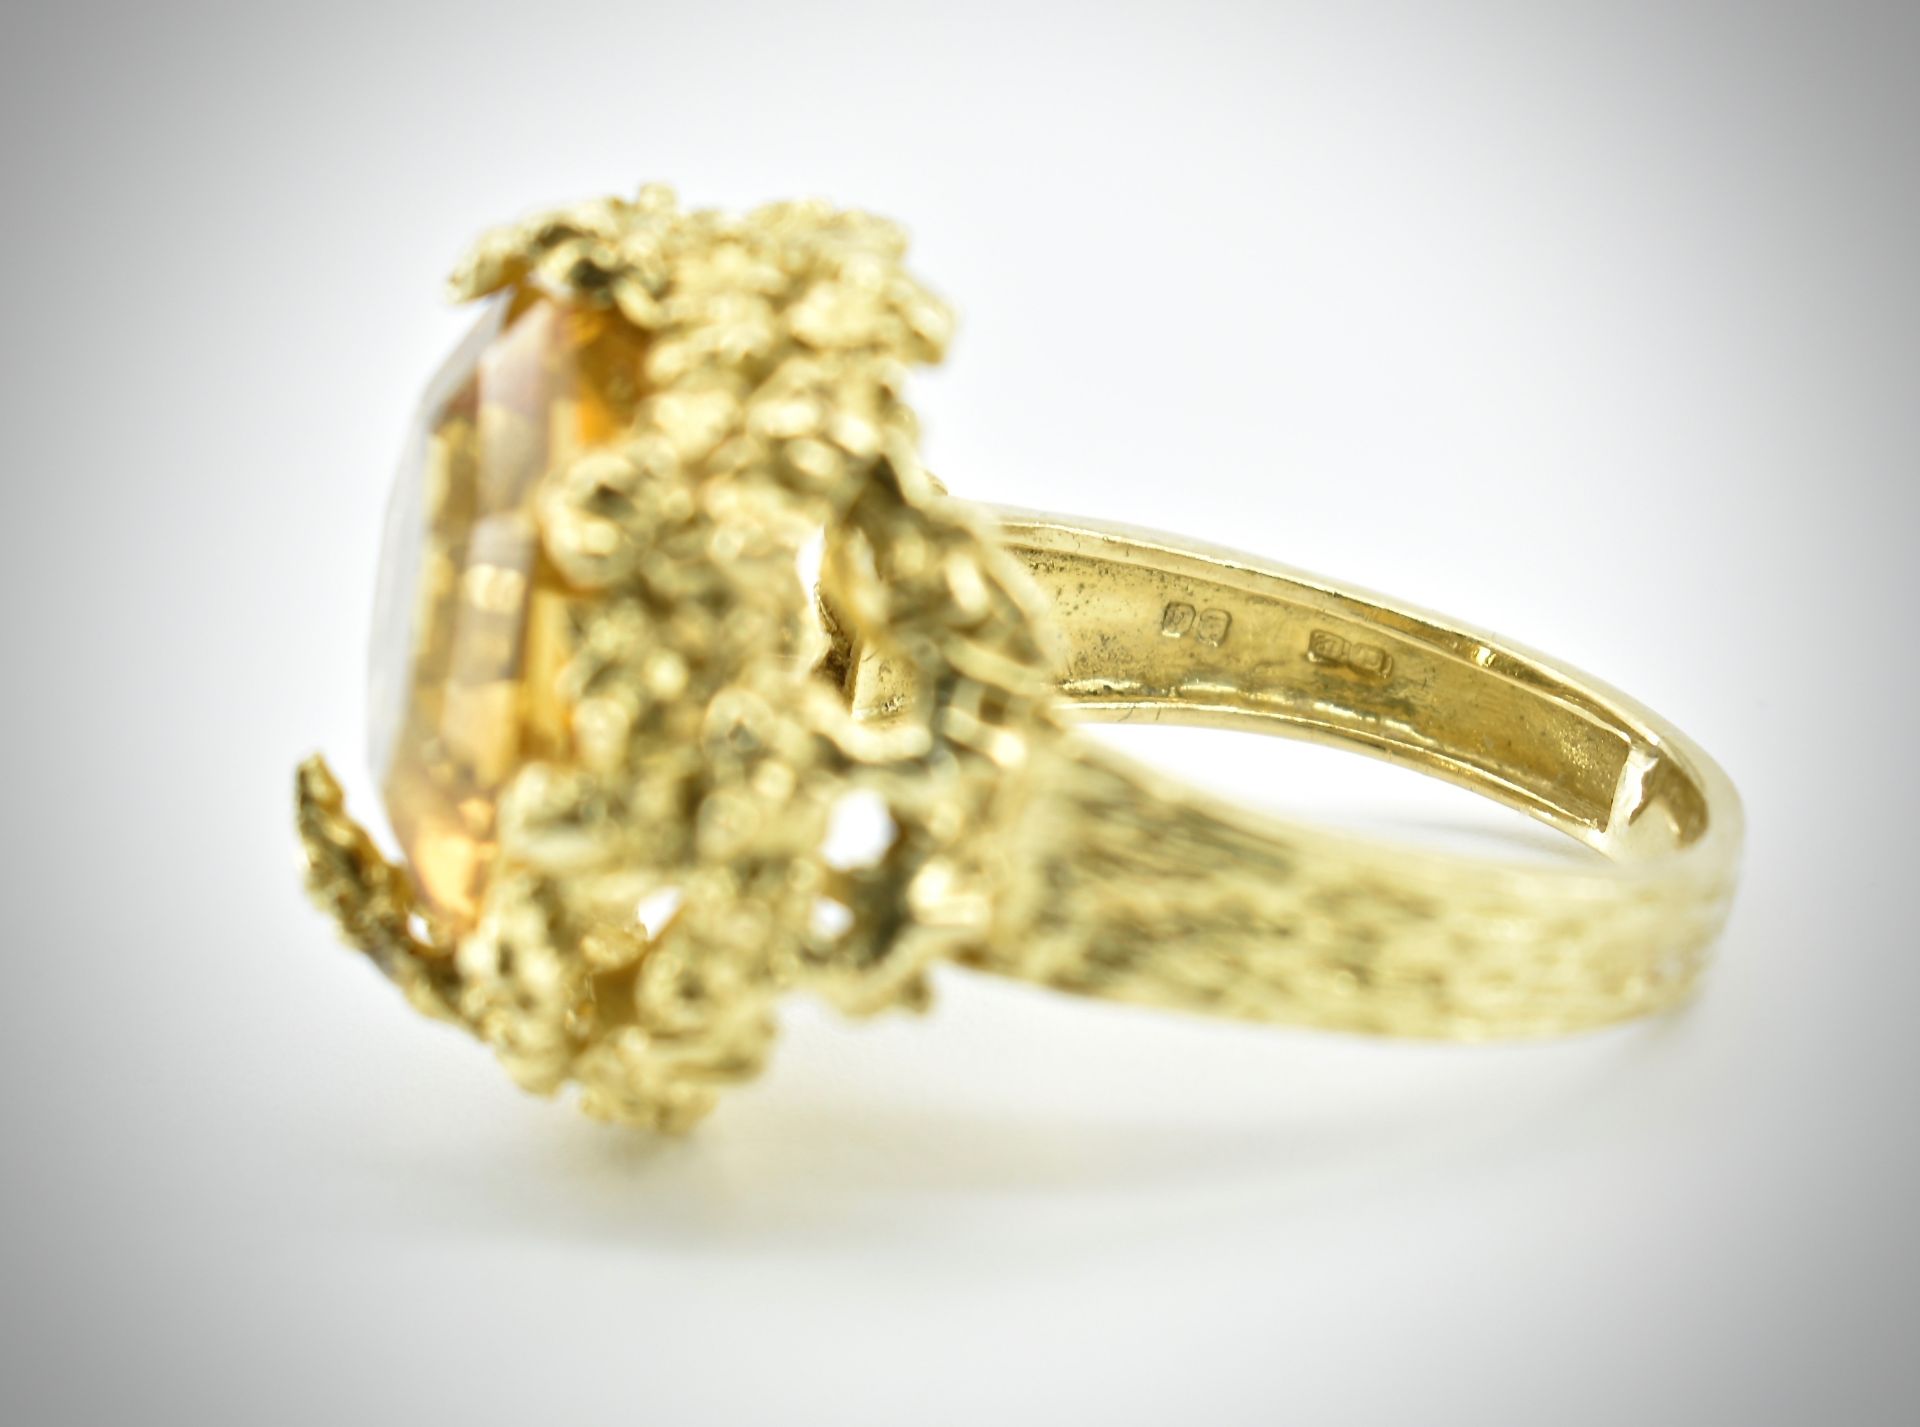 Alan Martin Gard - 18ct Gold Citrine Diamond Ring 1968 - Image 7 of 10